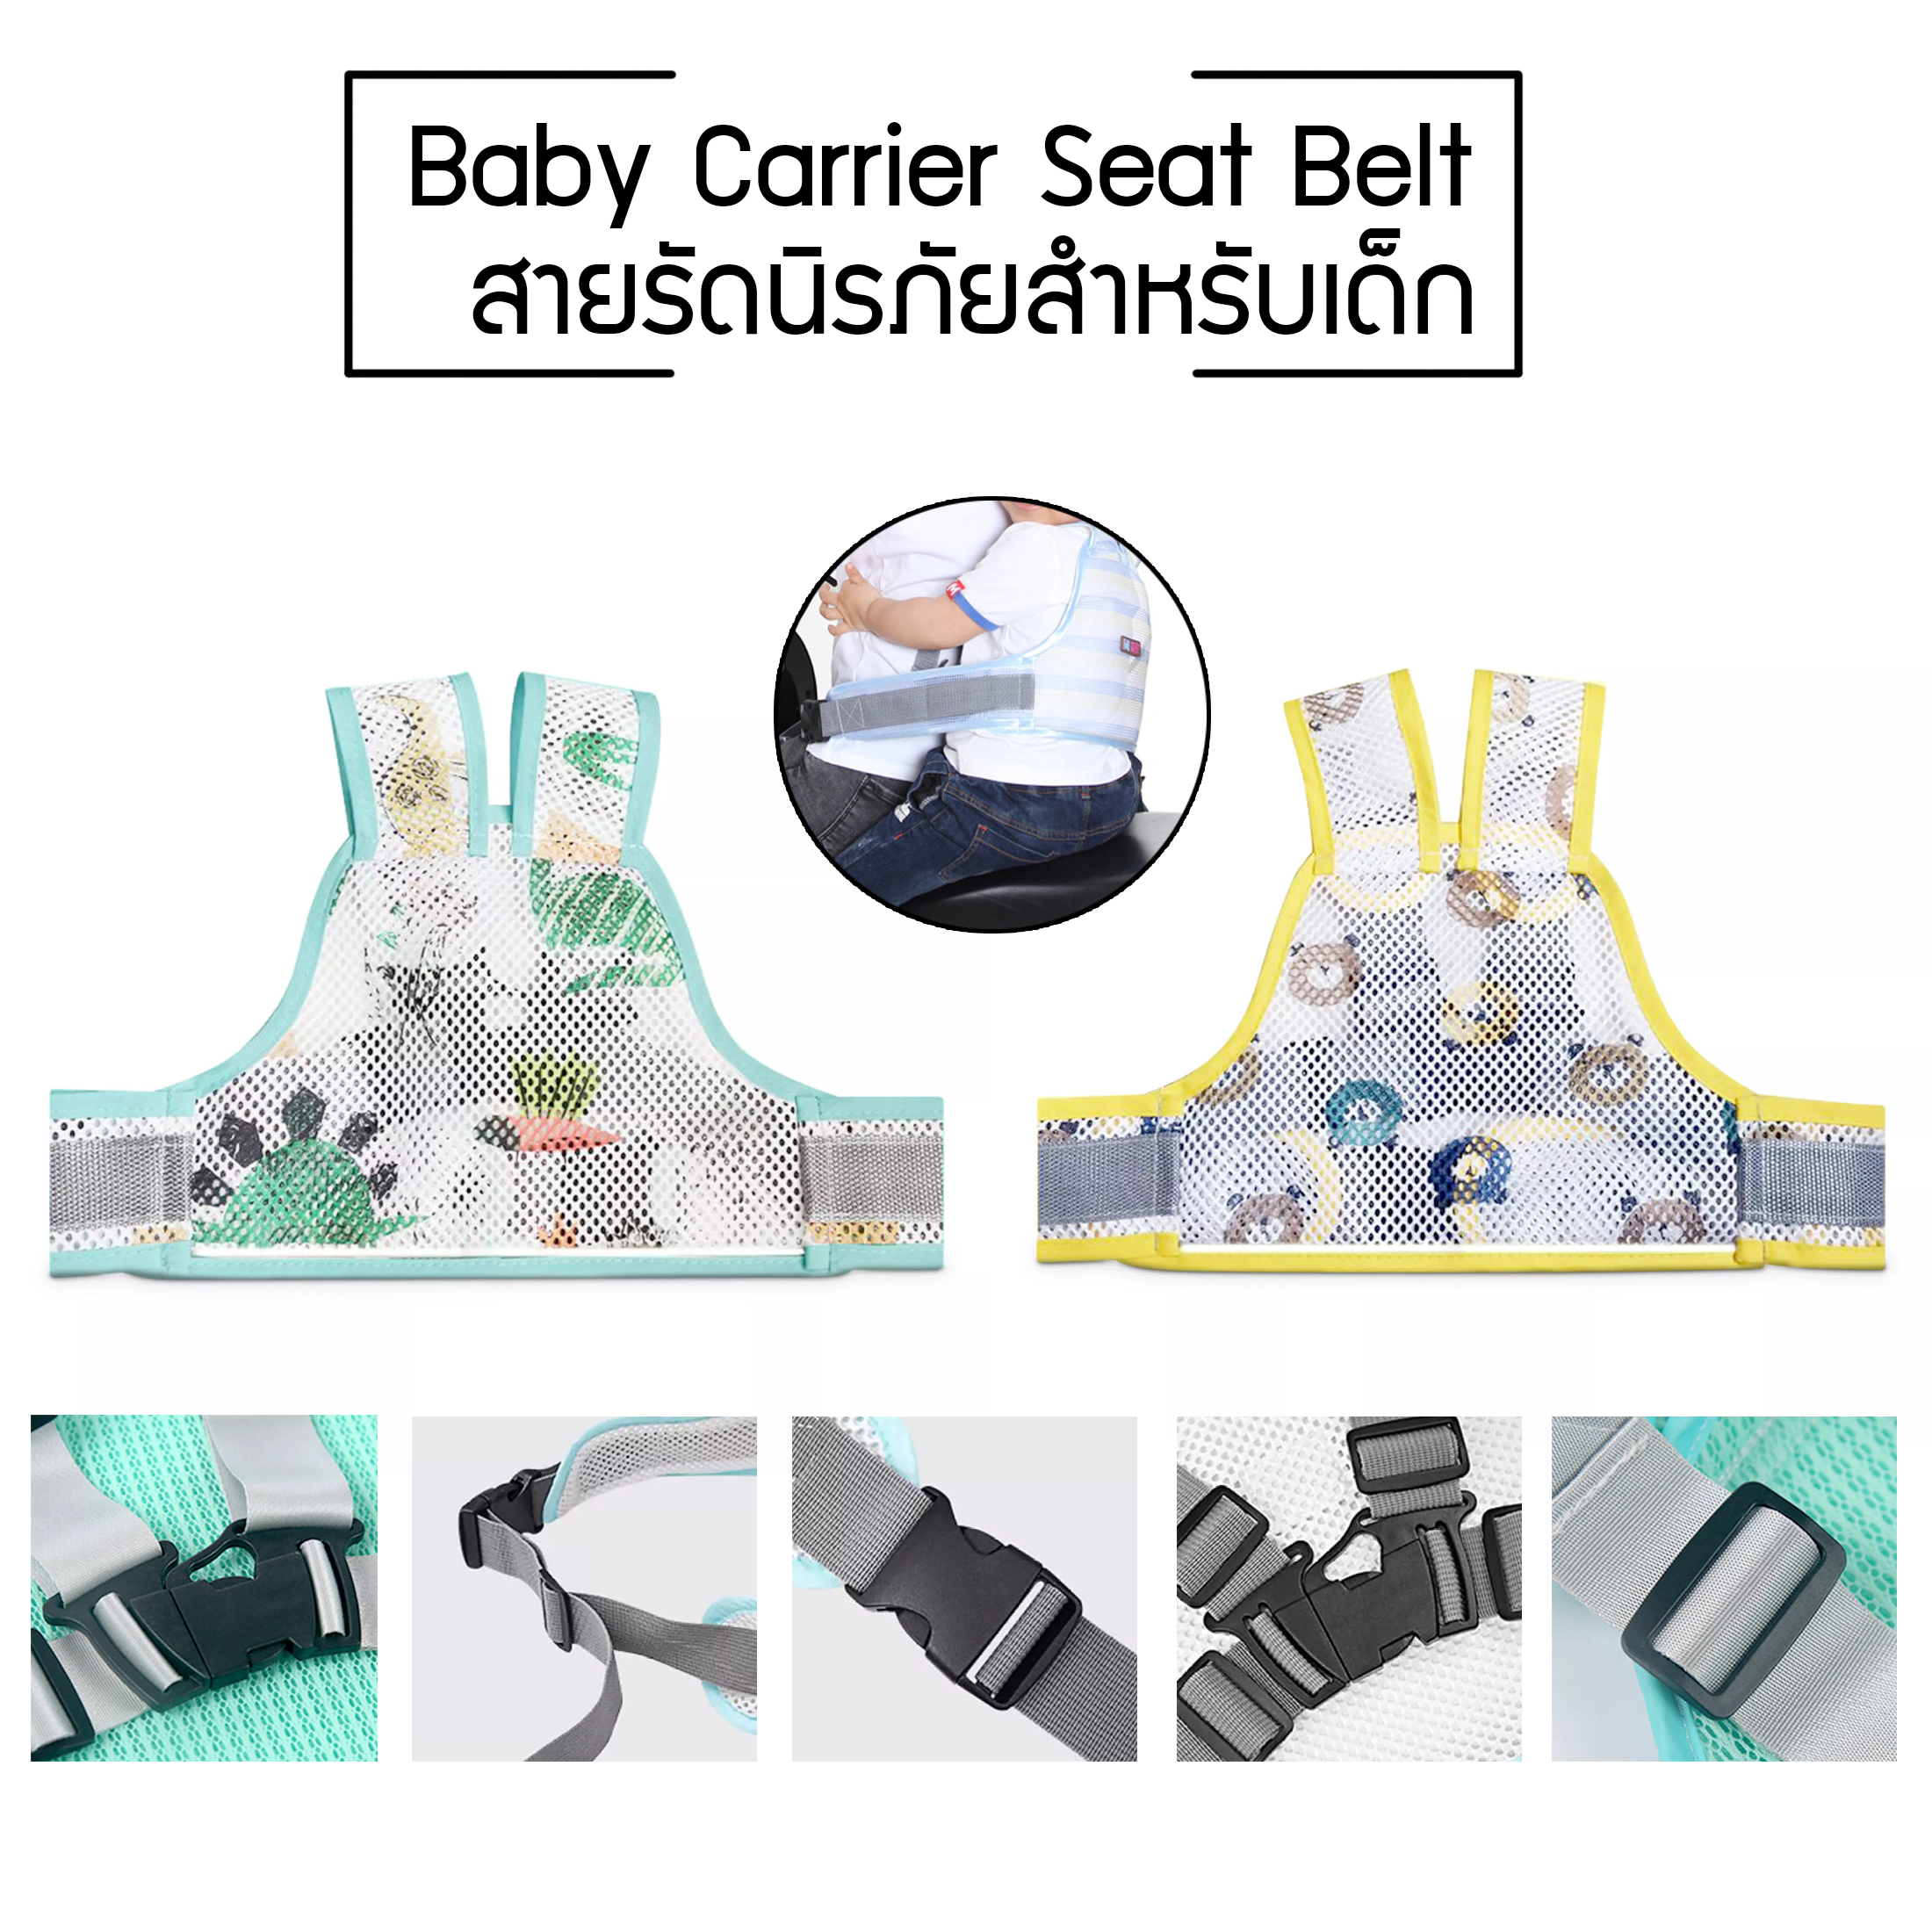 สายรัดนิรภัยเด็ก สำหรับเด็ก เข็มขัดนิรภัยเด็ก สายรัดเอวกันเด็กตก ป้องกันเด็กตกรถ เพื่อความปลอดภัย Baby Carrier Seat Belt ร้านhappyshoppp